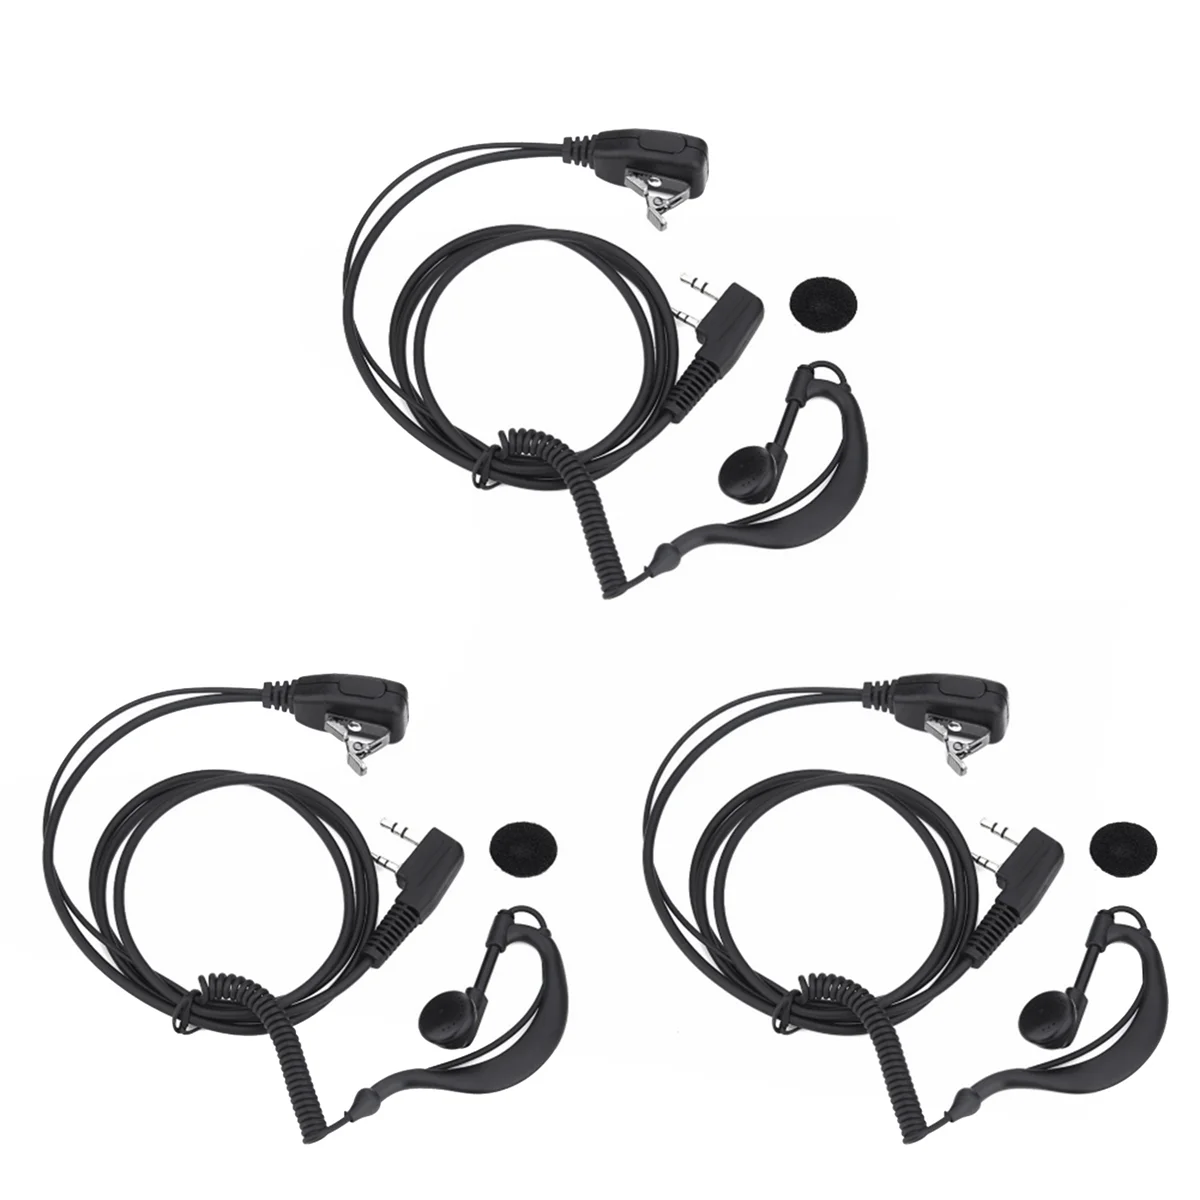 

3PCS 2 PIN Earpiece Headset PTT MIC Ear Hooks Walkie Talkie Earbud Earphone Earpiece for UV5R/KENWOOD/HYT